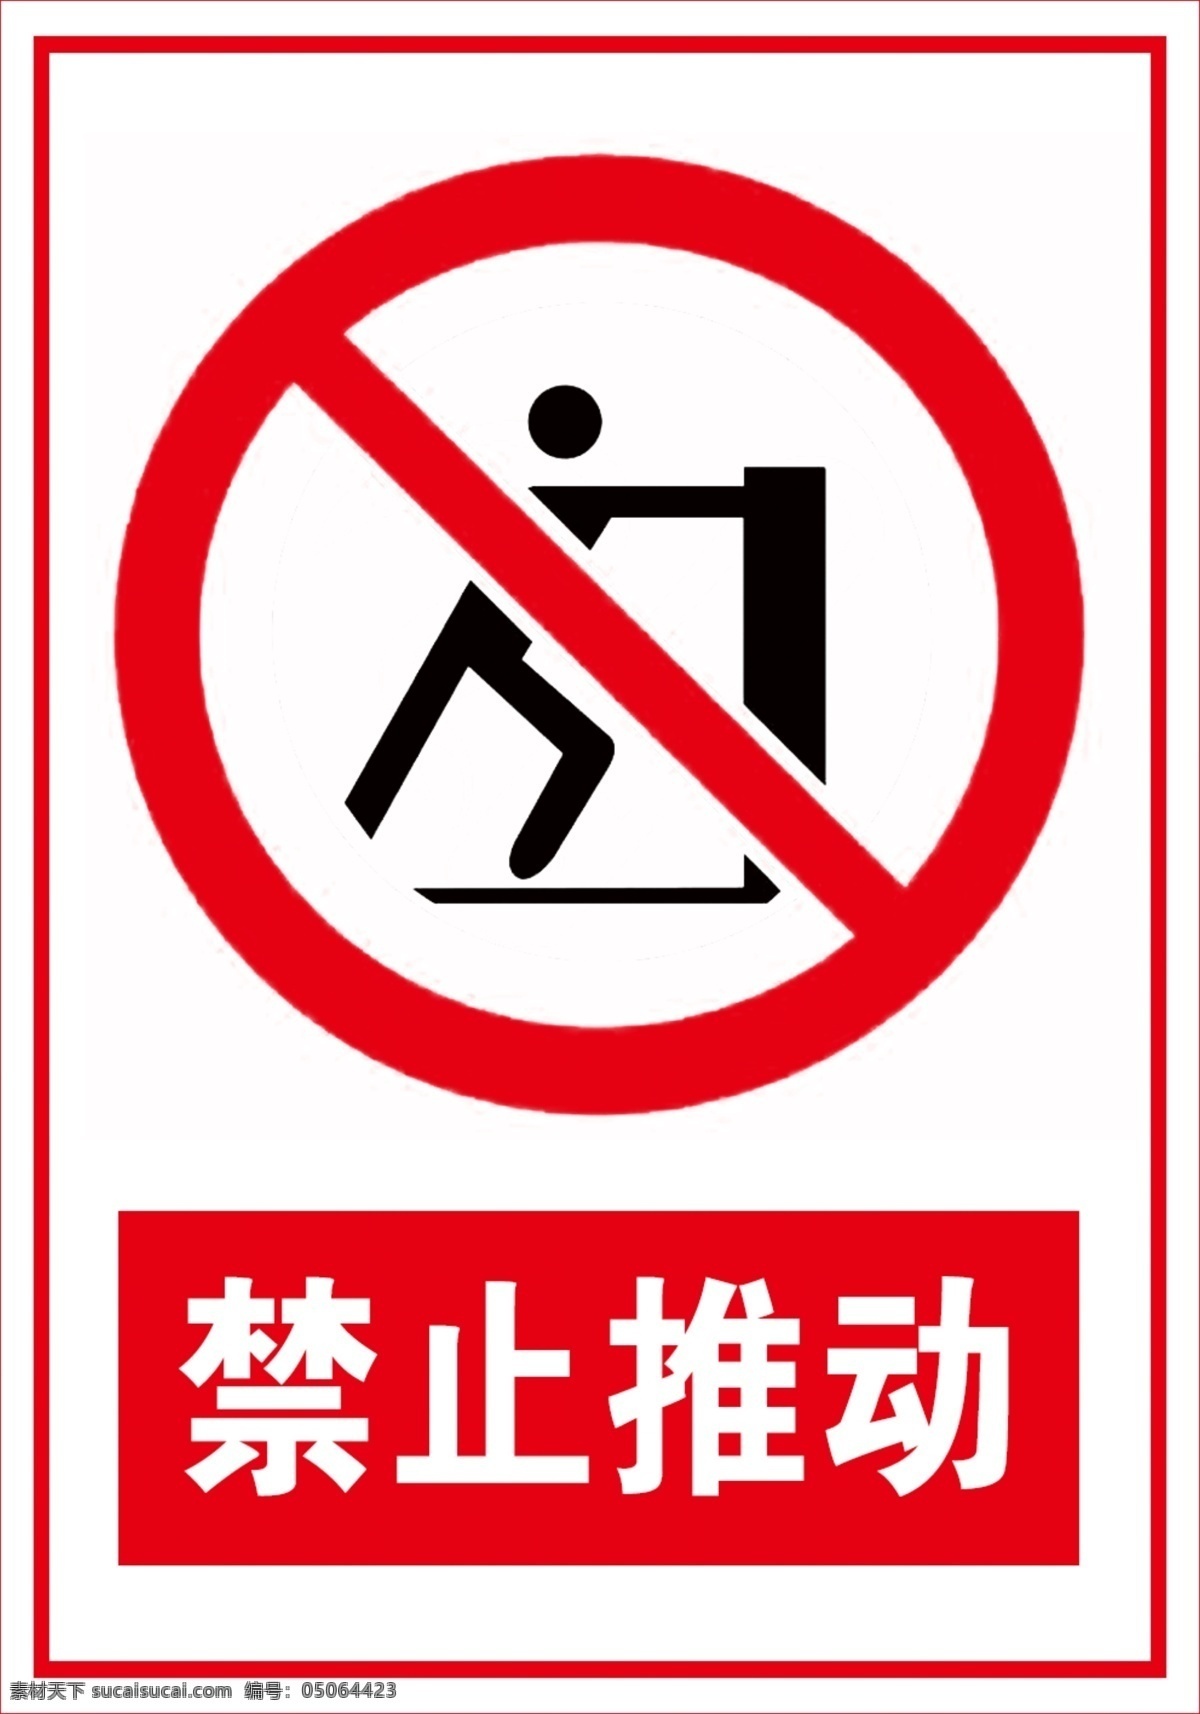 坐卧标志 红色标志 禁止标志 禁止推动标志